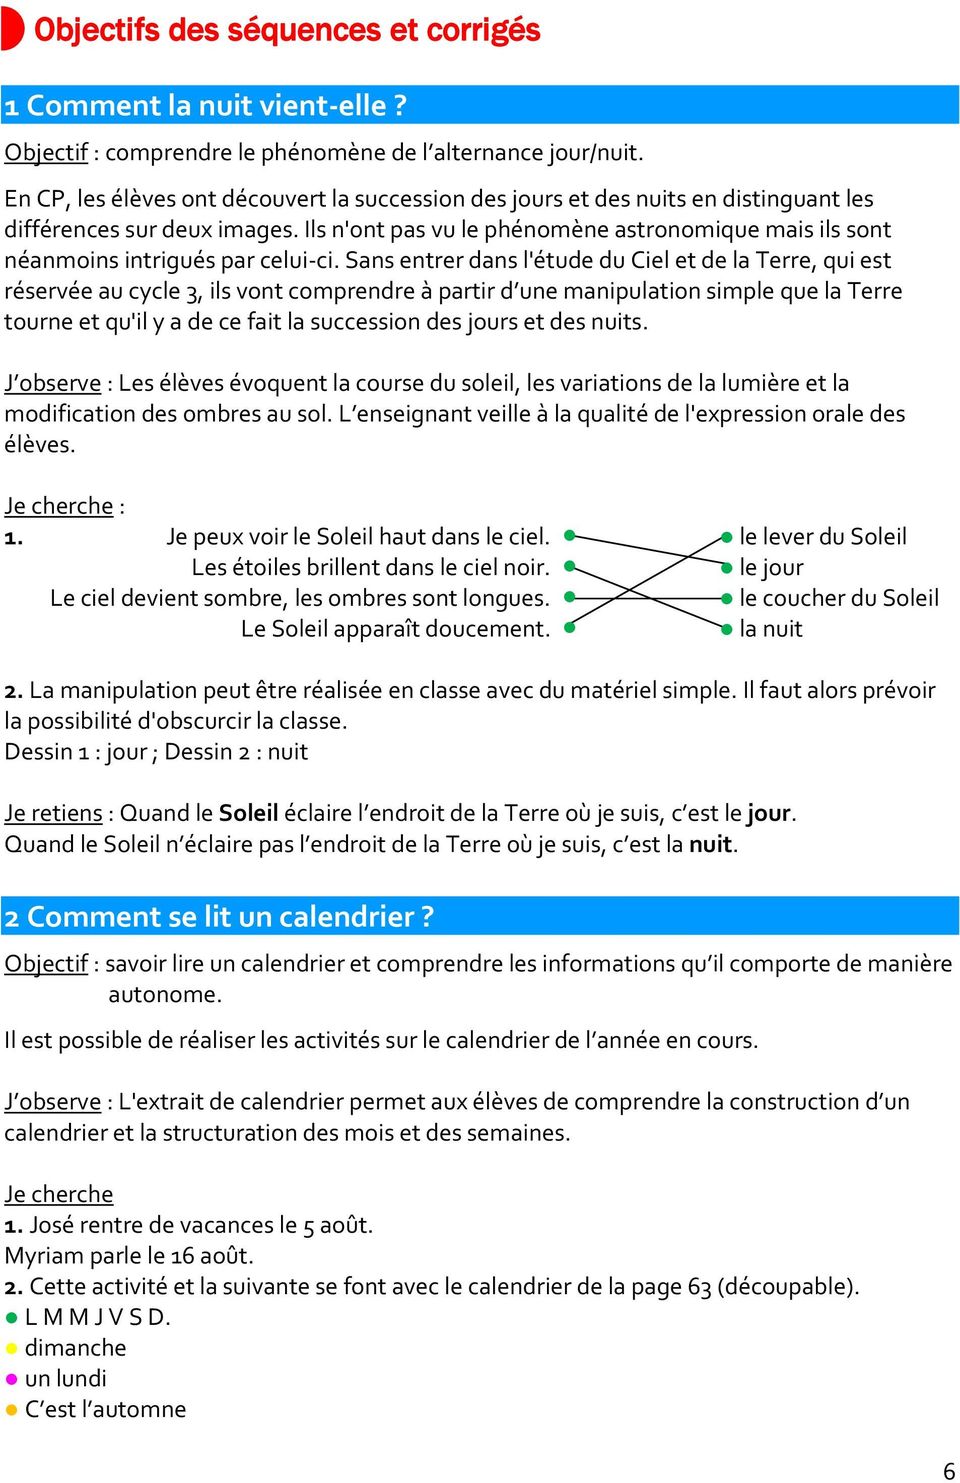 Ce1 Cahiers Luciole Guide De L Enseignant Les De La A Courdent D Dessobry Pdf Free Download